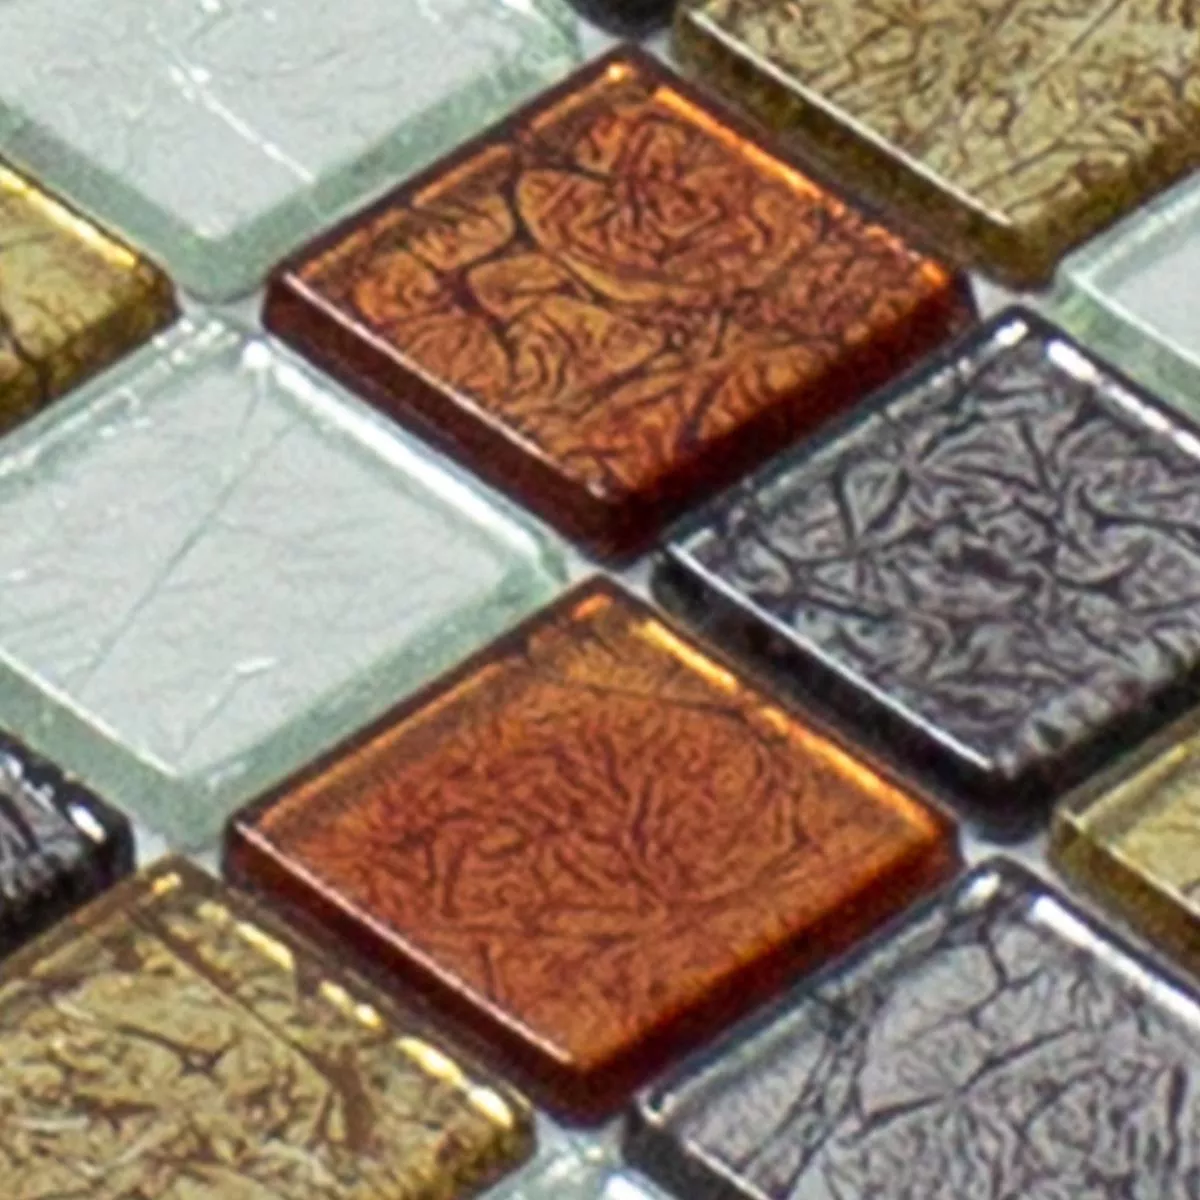 Muster von Mosaikfliesen Glas Bonnie Crystal Struktur Gold Silber Rot